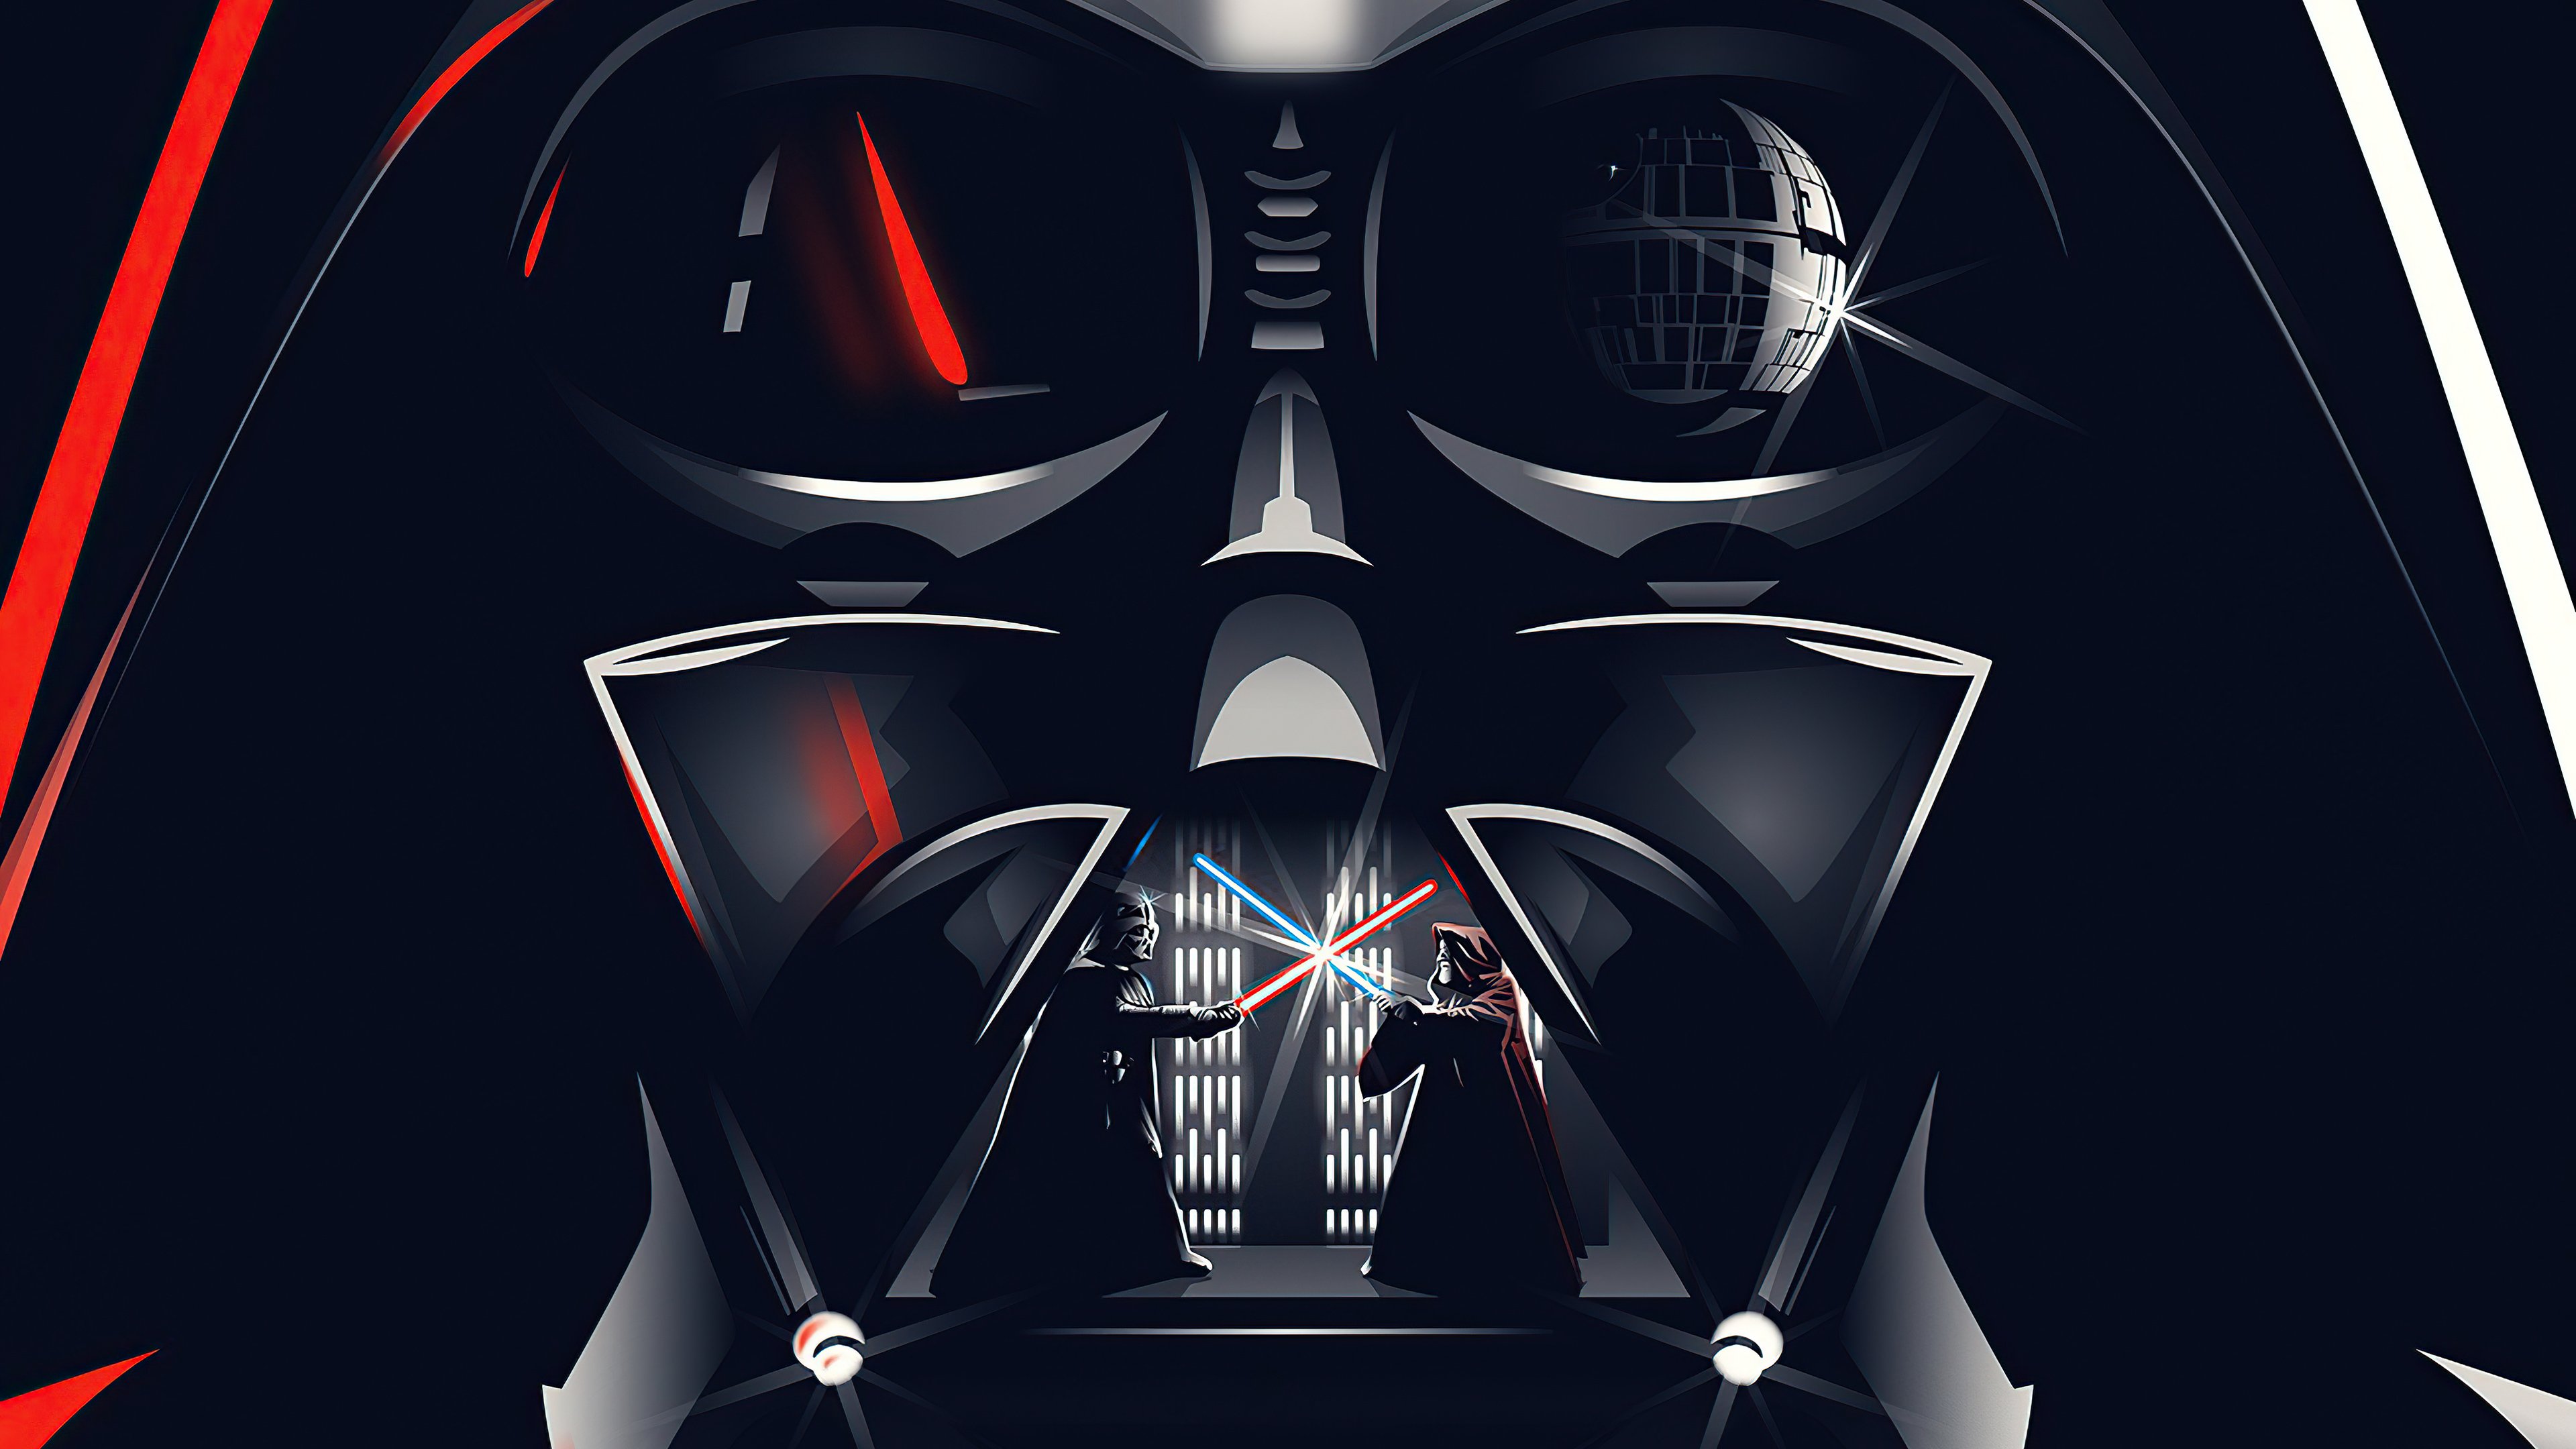 Fondos de pantalla Darth Vader Pelea Star Wars